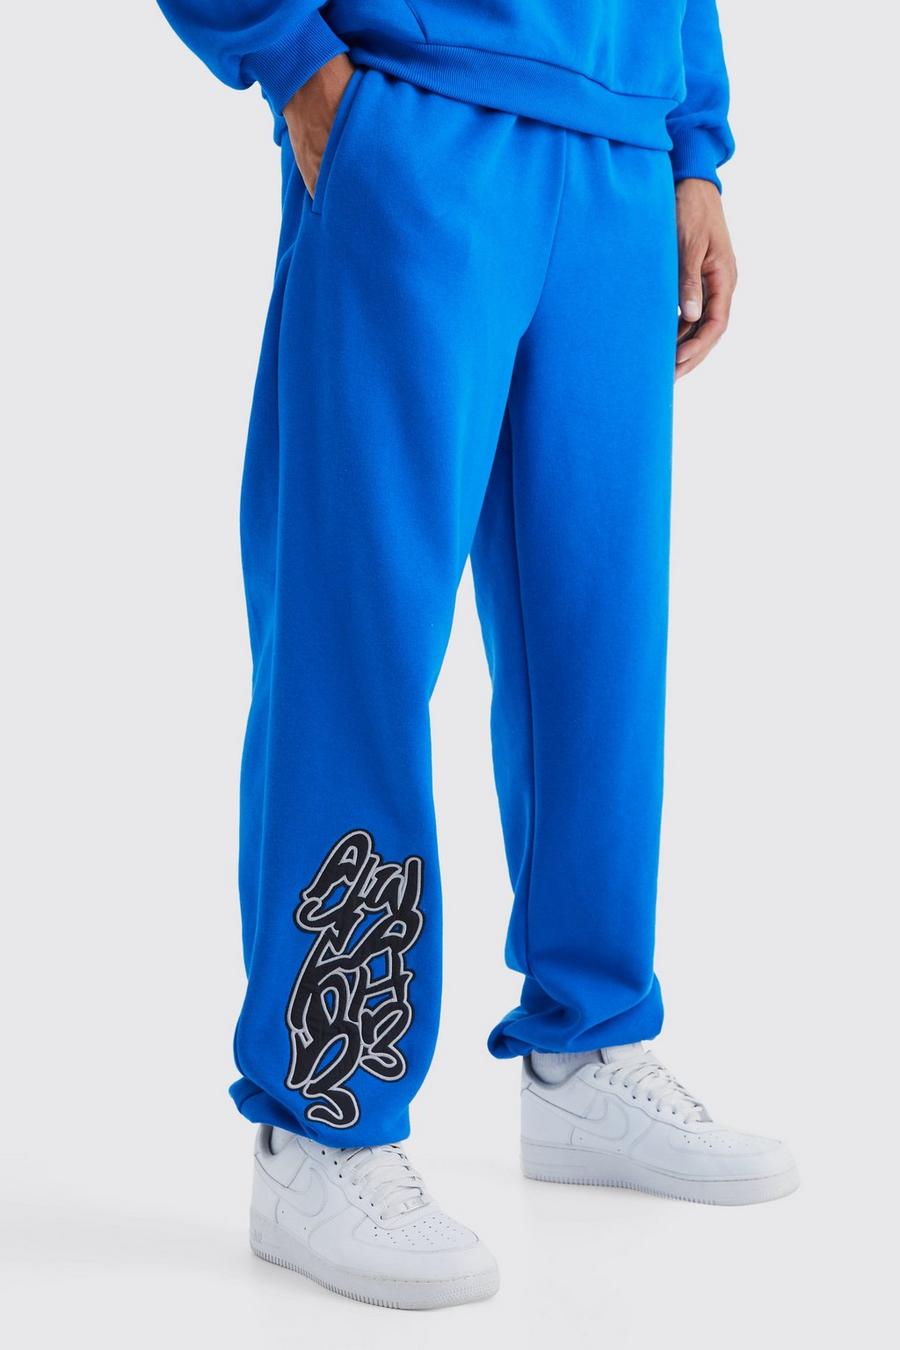 Pantalón deportivo Tall oversize con estampado Worldwide de grafiti, Cobalt